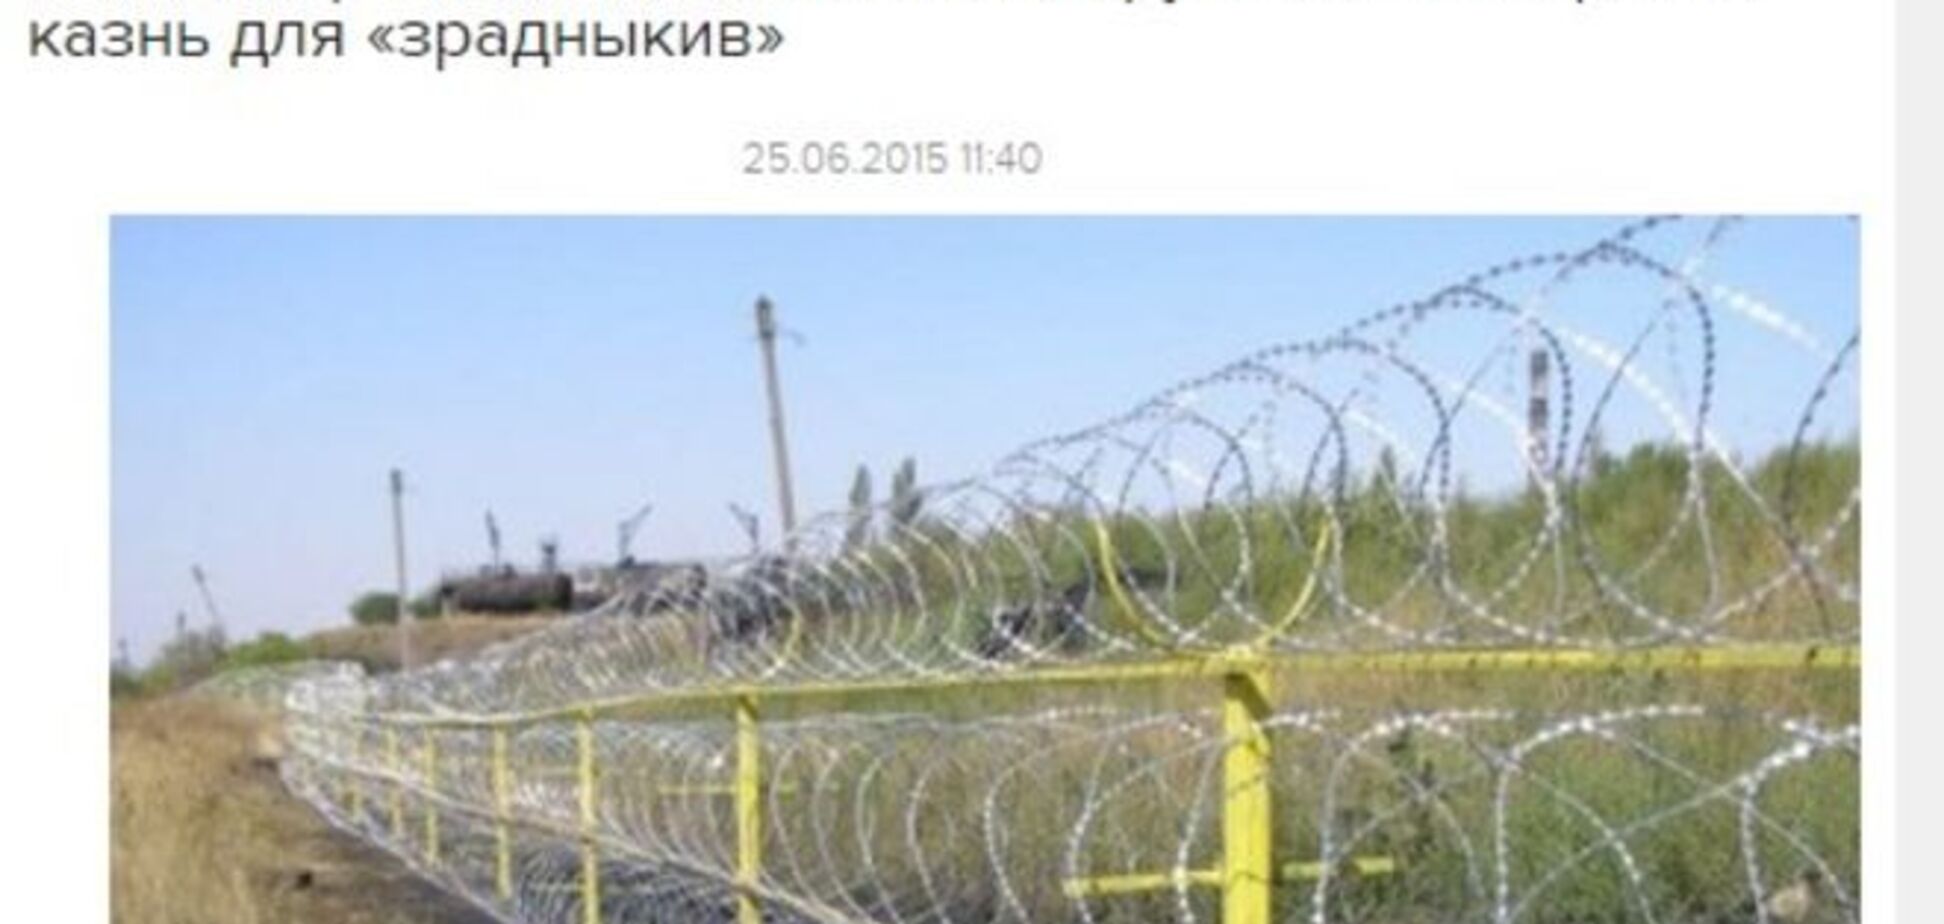 Російська пропаганда заявила про будівництво концтаборів в Україні: викриття фейка